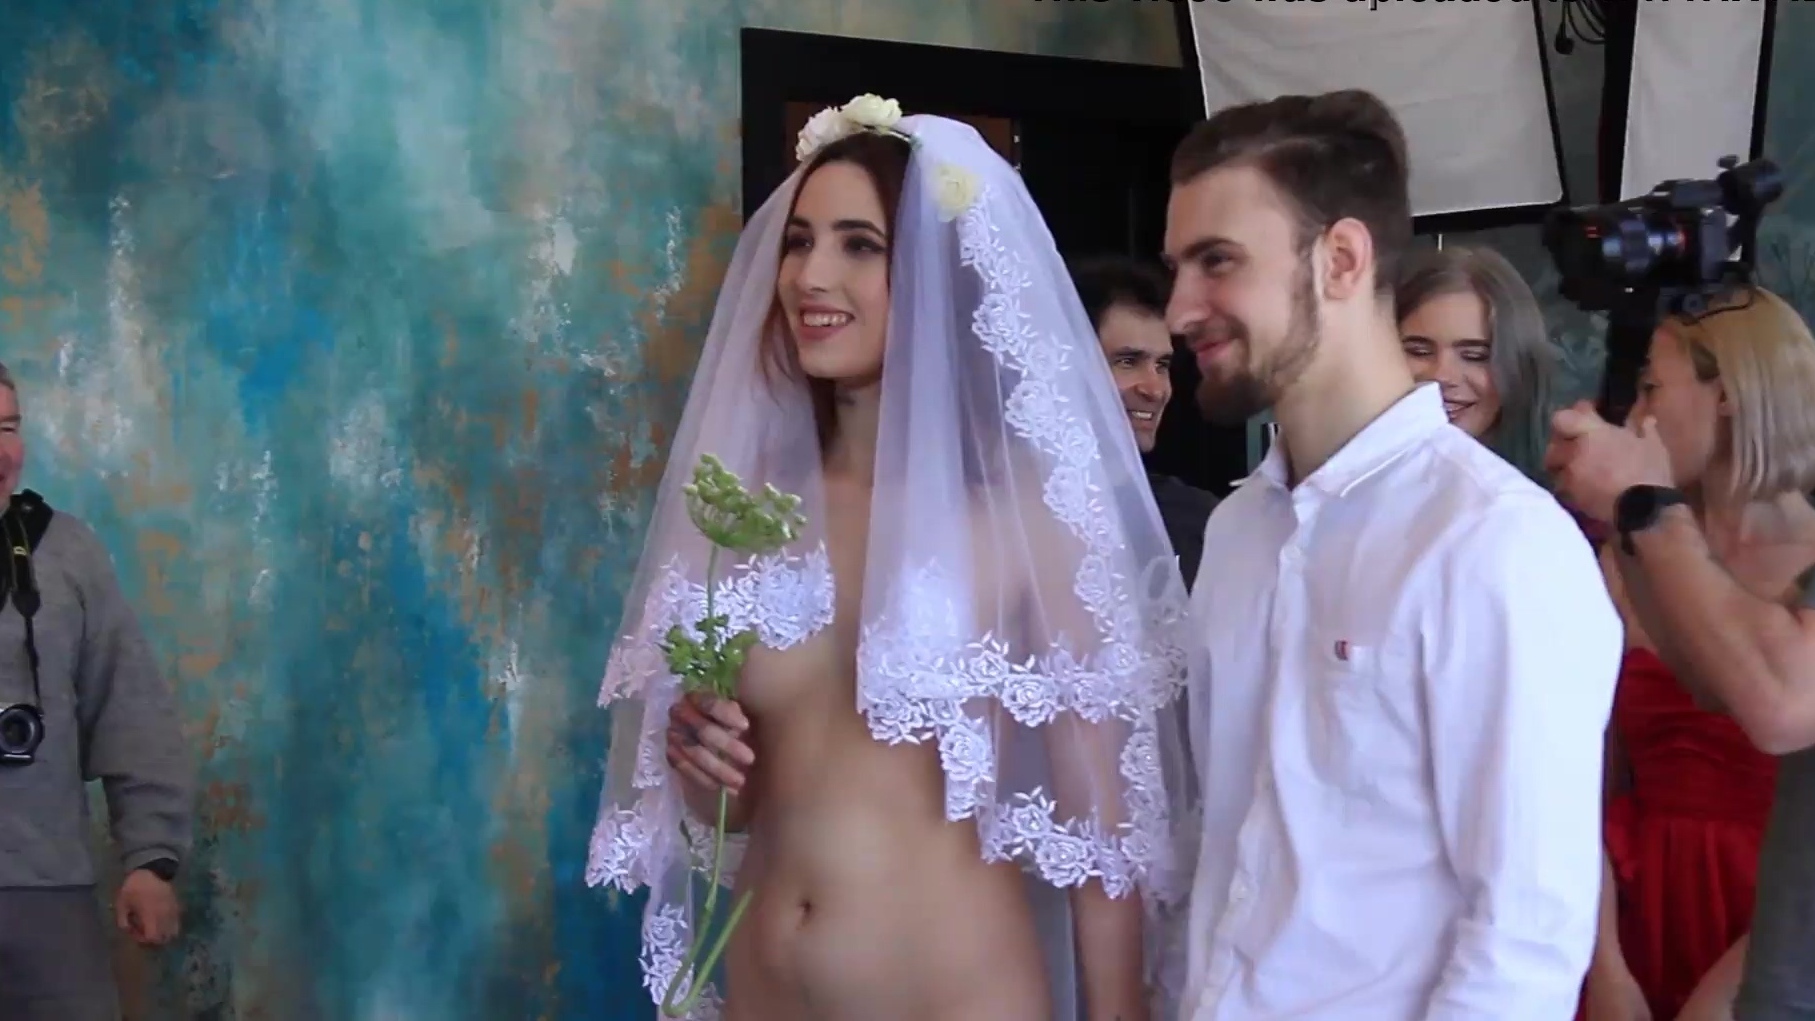 Amateur Bride Porn Wedding - Crazy Russian wedding with Nude Bride